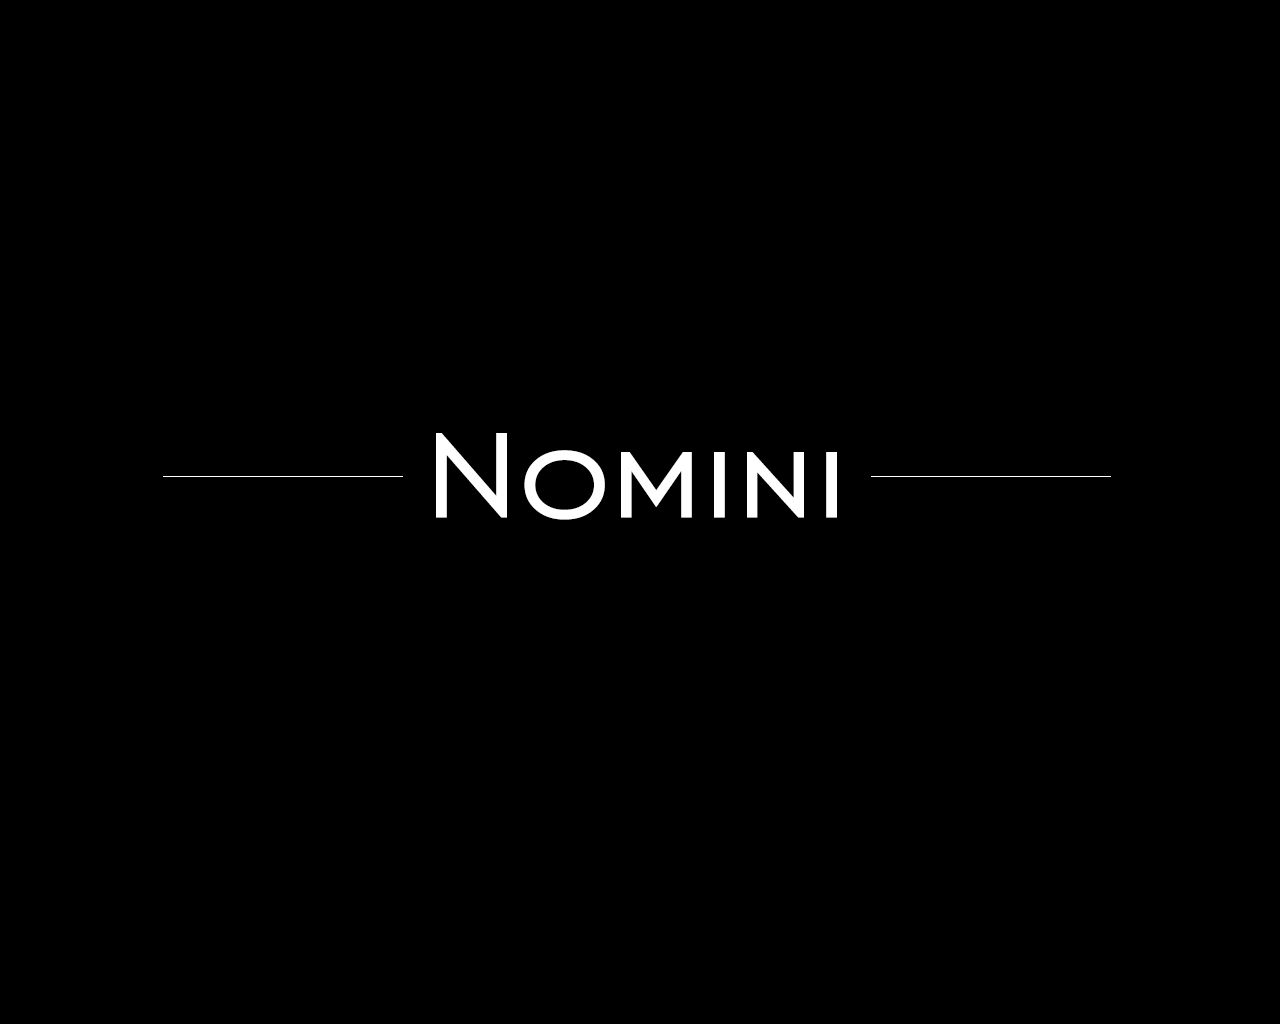 Логотип и иконка для iOS-приложения Nomini - дизайнер Robertson